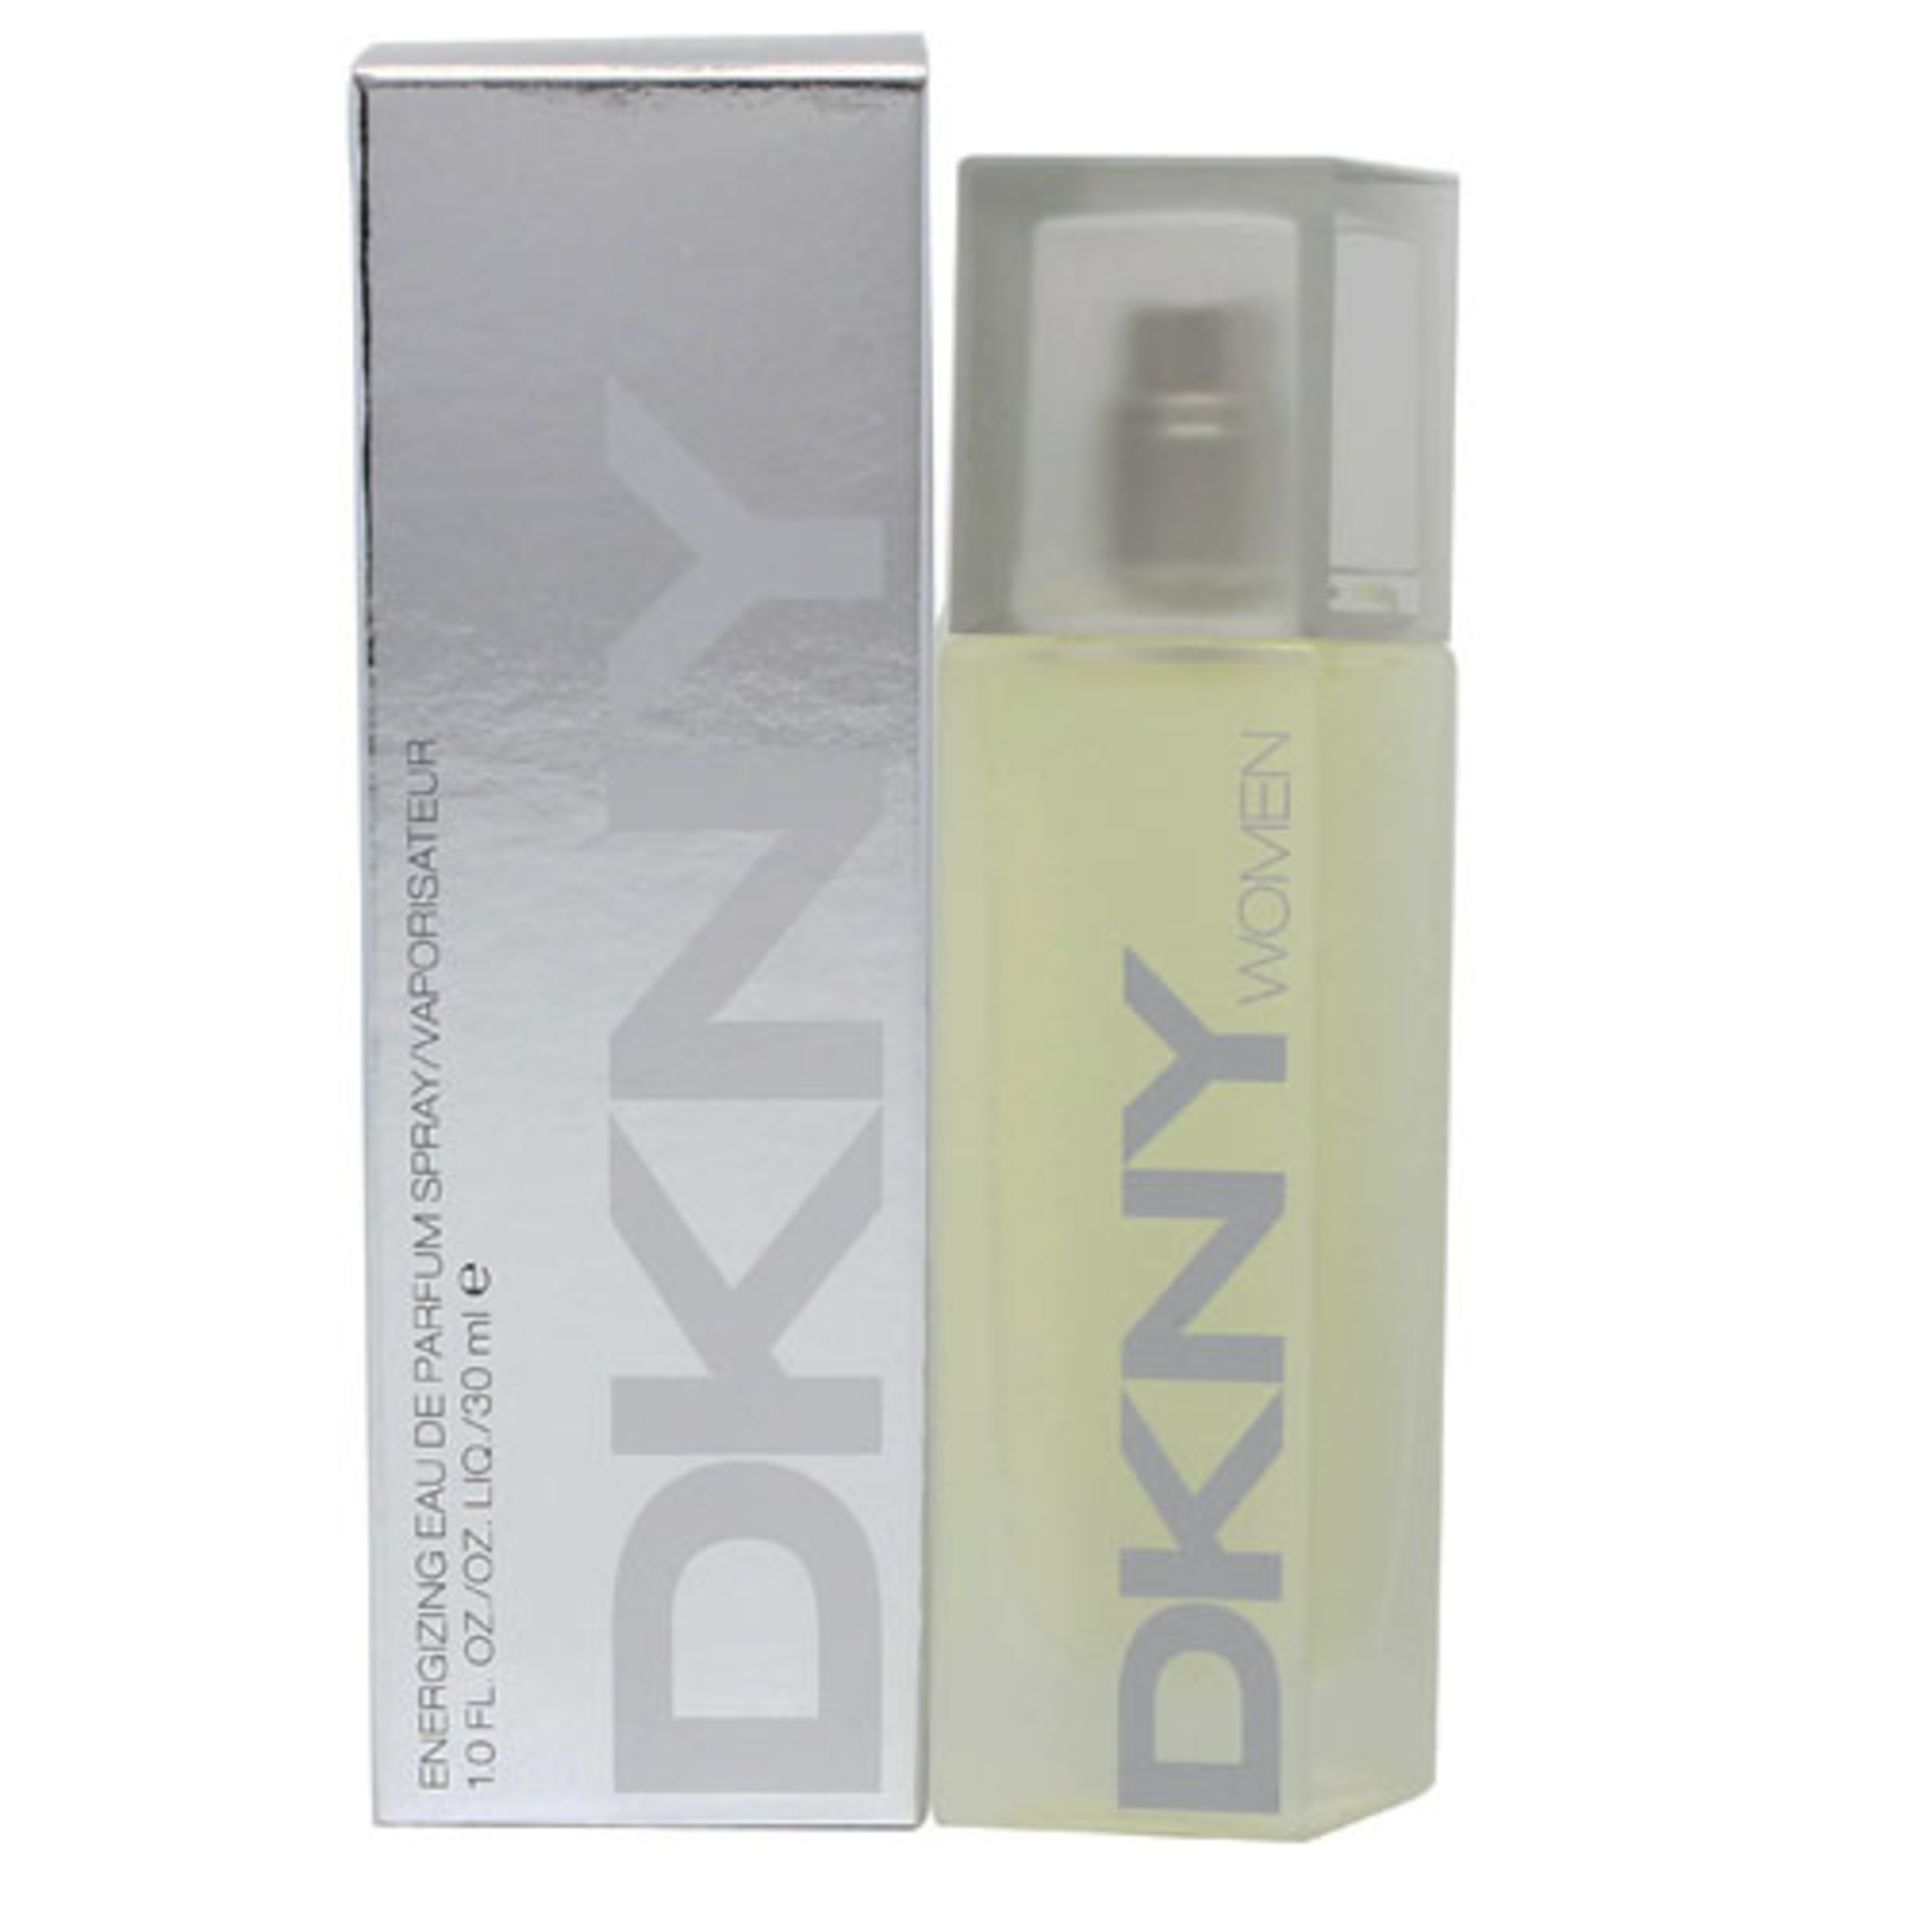 V Brand New DKNY For Women Energizing Eau De Toilette Spray 30ml